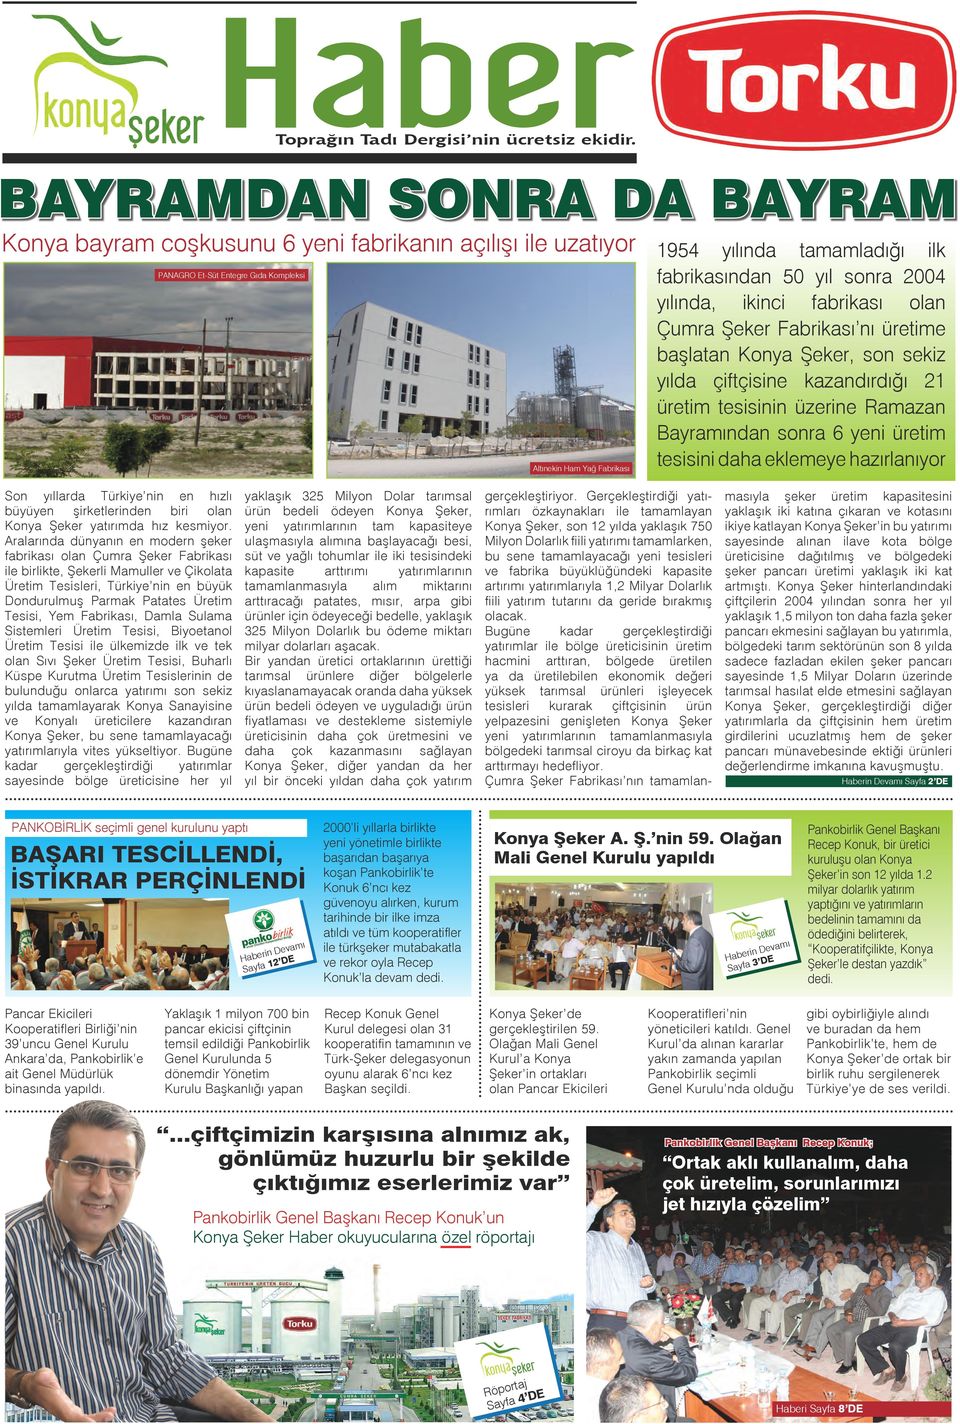 yıl sonra 2004 yılında, ikinci fabrikası olan Çumra Şeker Fabrikası nı üretime başlatan Konya Şeker, son sekiz yılda çiftçisine kazandırdığı 21 üretim tesisinin üzerine Ramazan Bayramından sonra 6